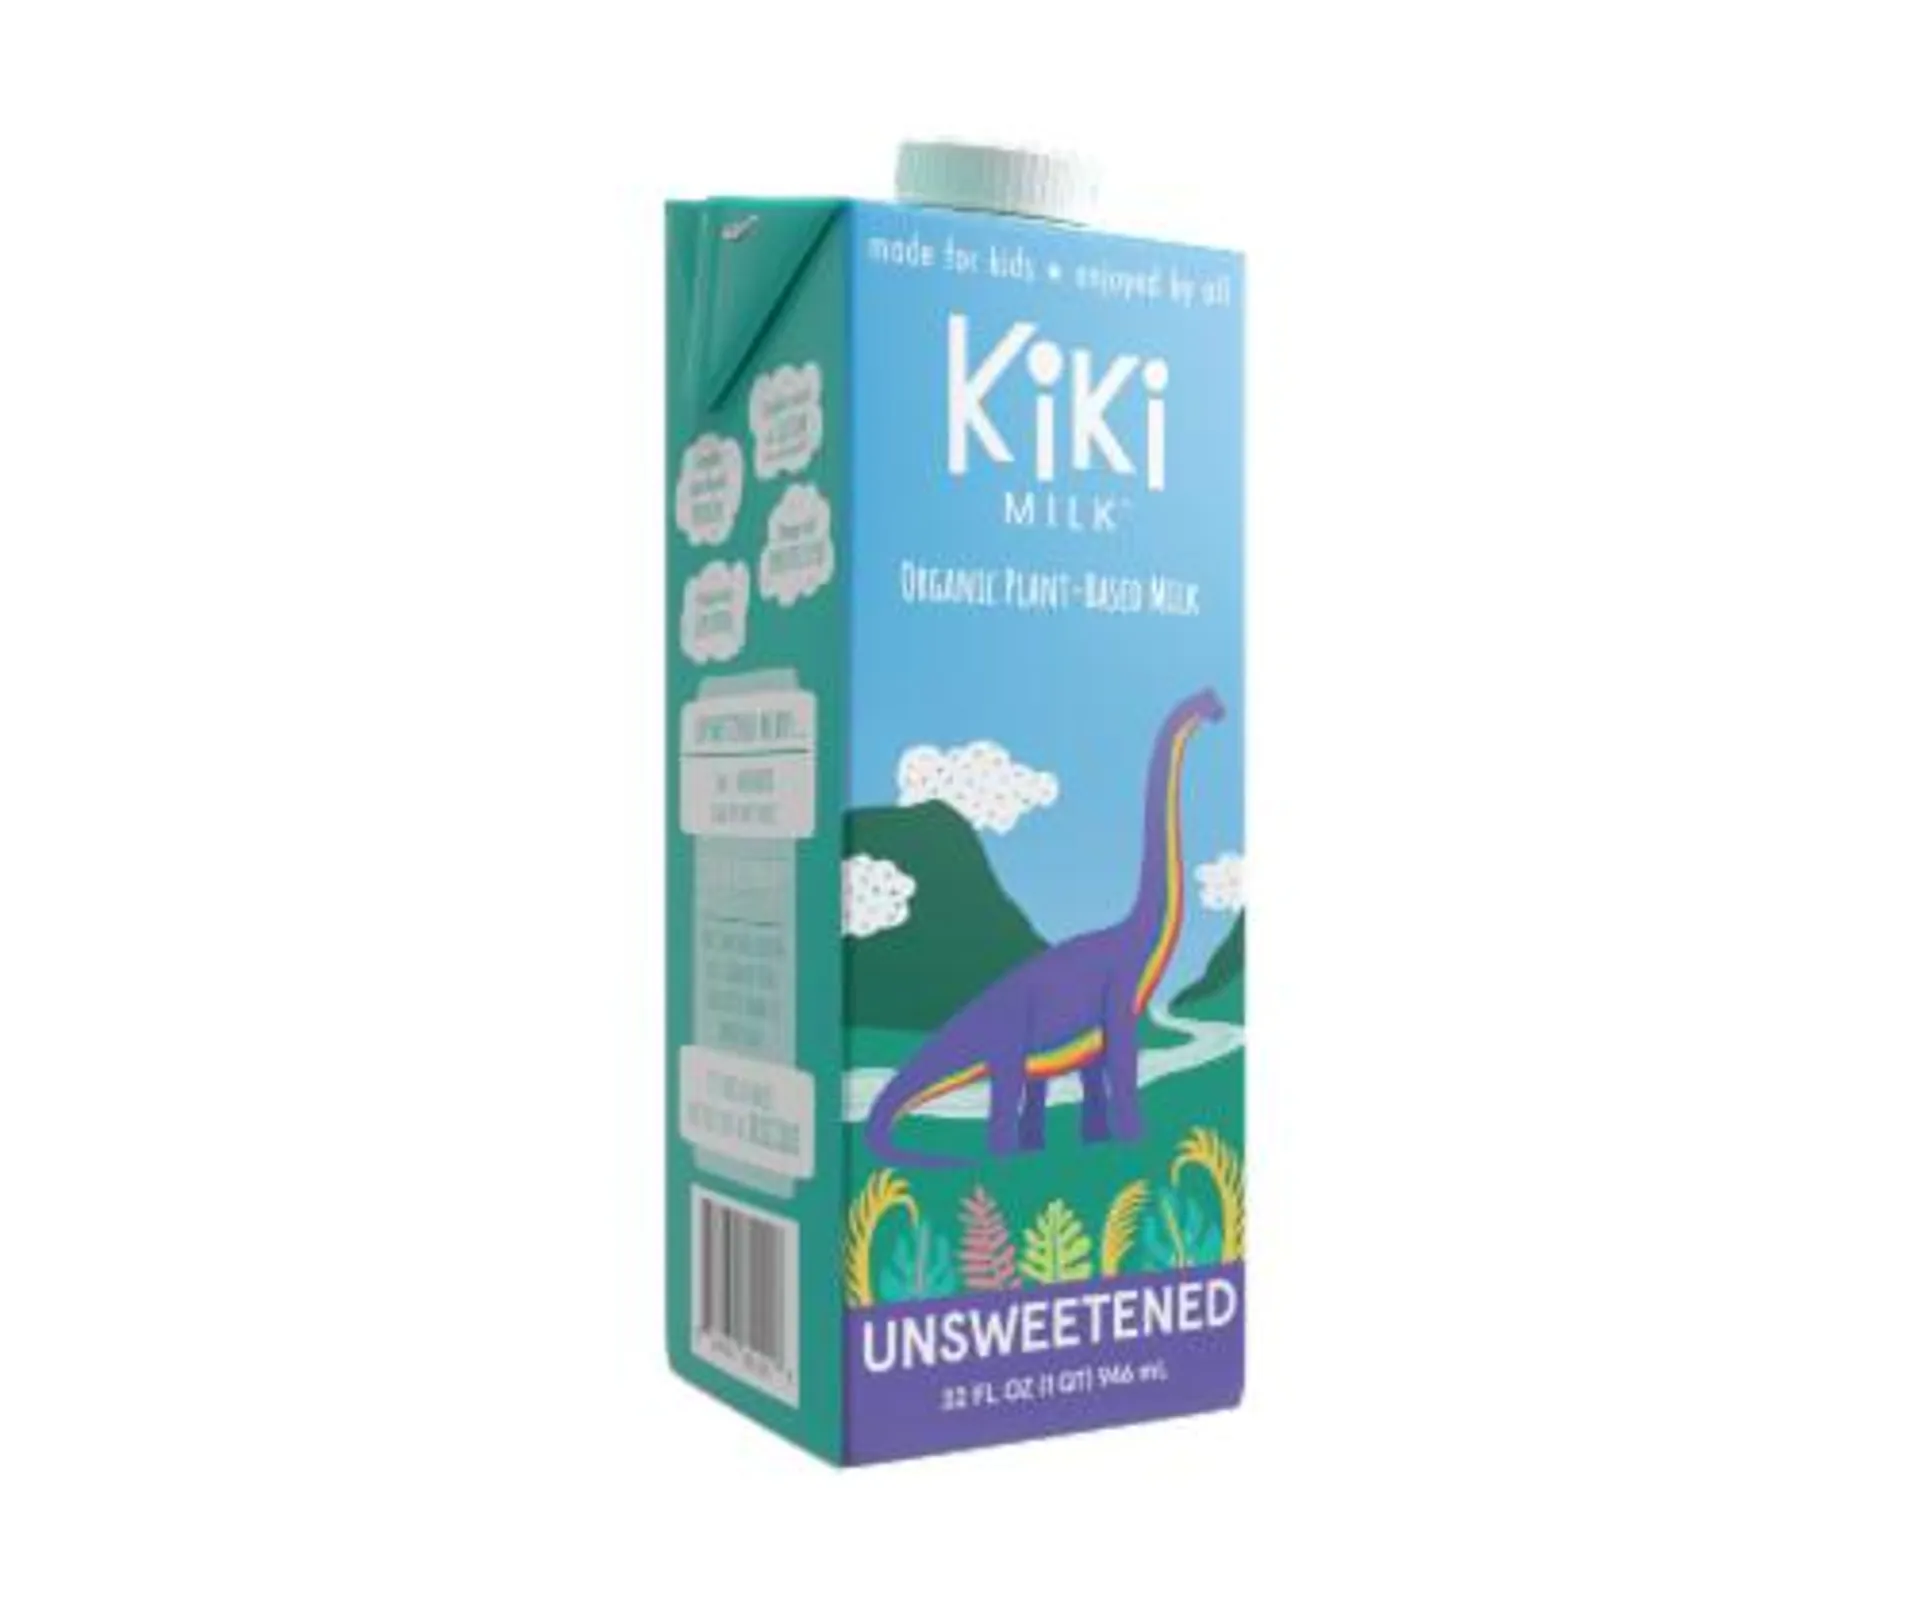 Kiki Milk - Unsweetened Kiki Milk 32 fl oz Pack of 6